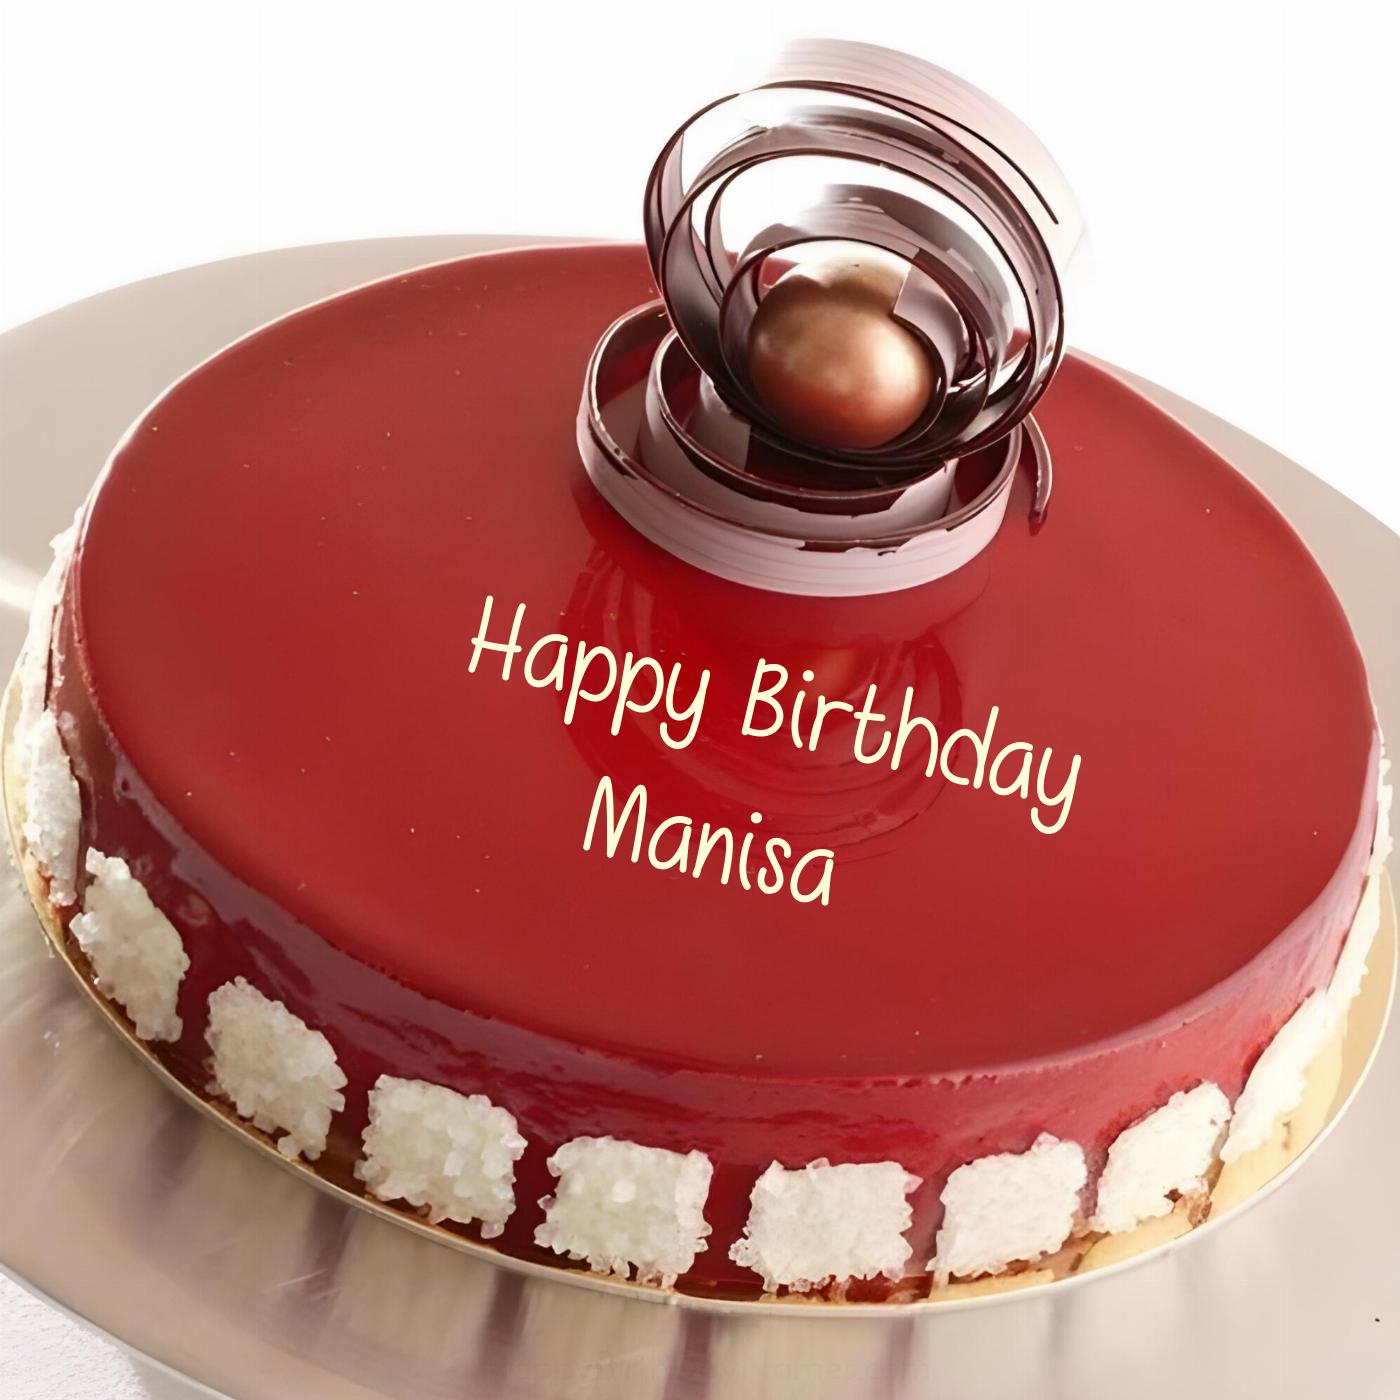 Happy Birthday Manisa Beautiful Red Cake